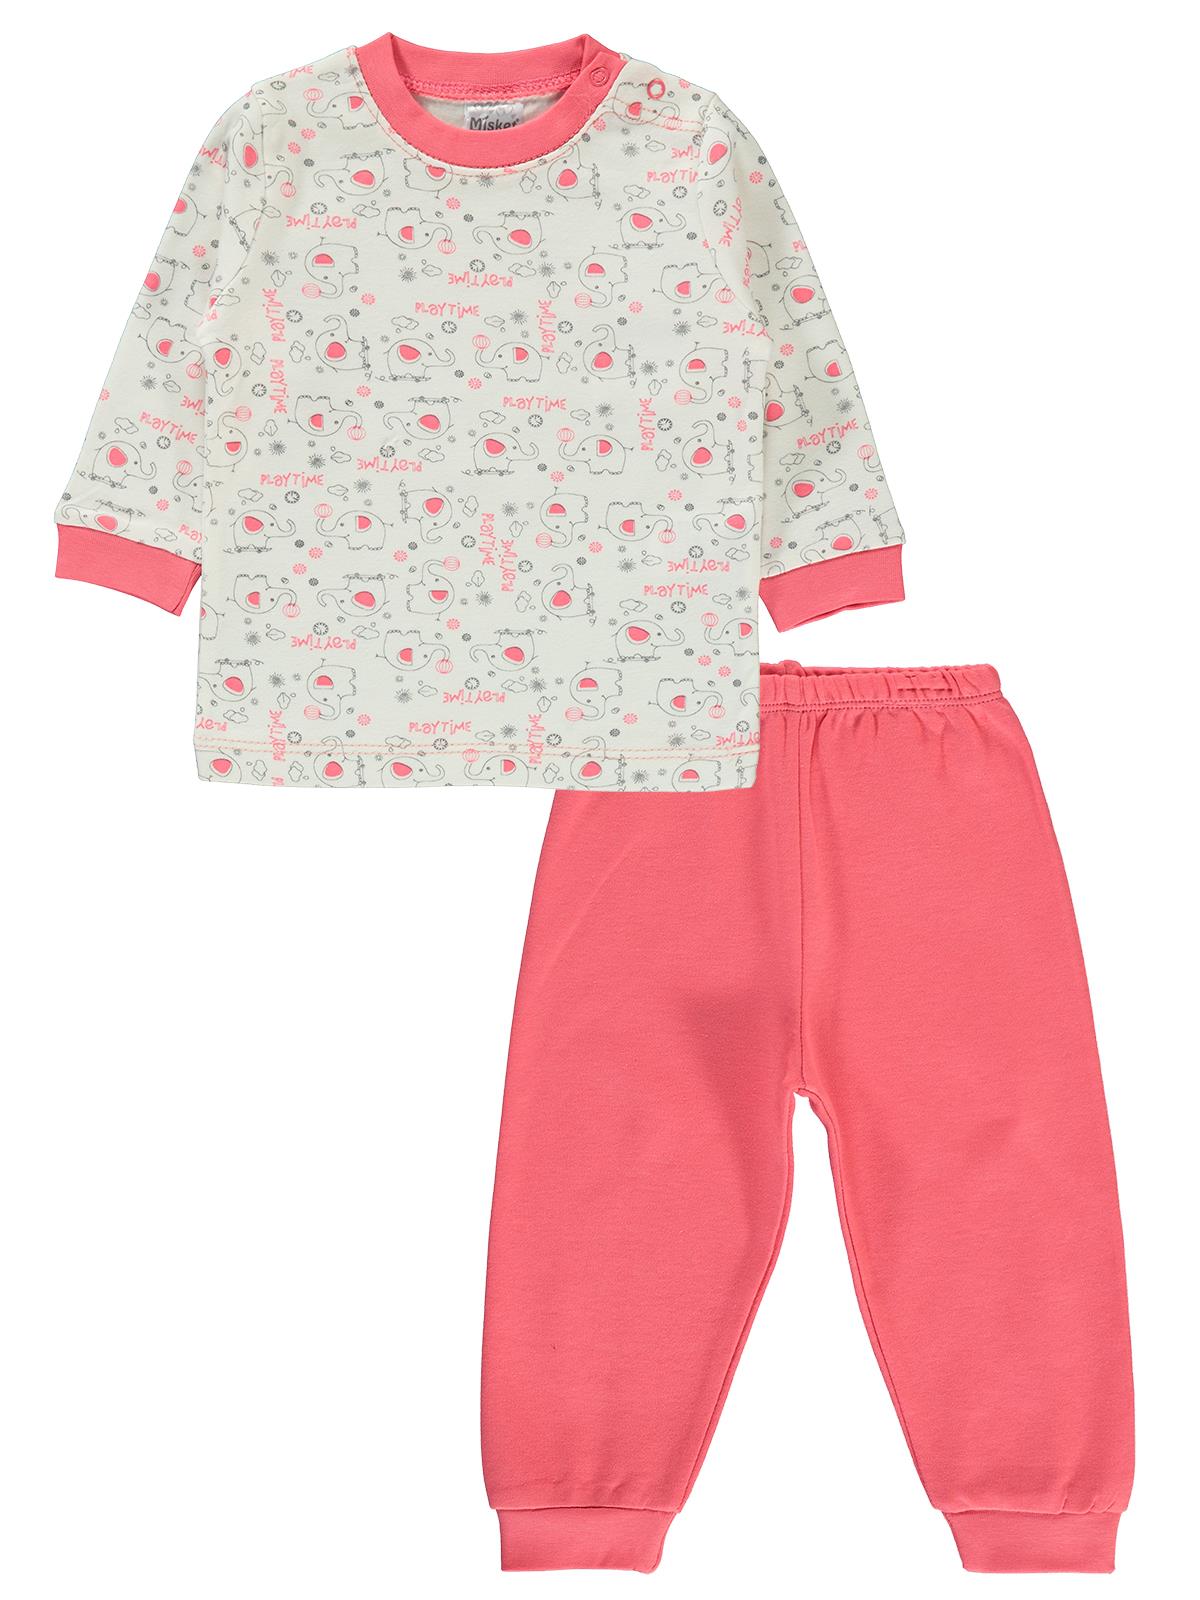 Misket Kız Bebek Pijama Takımı 6-12 Ay Narçiçeği